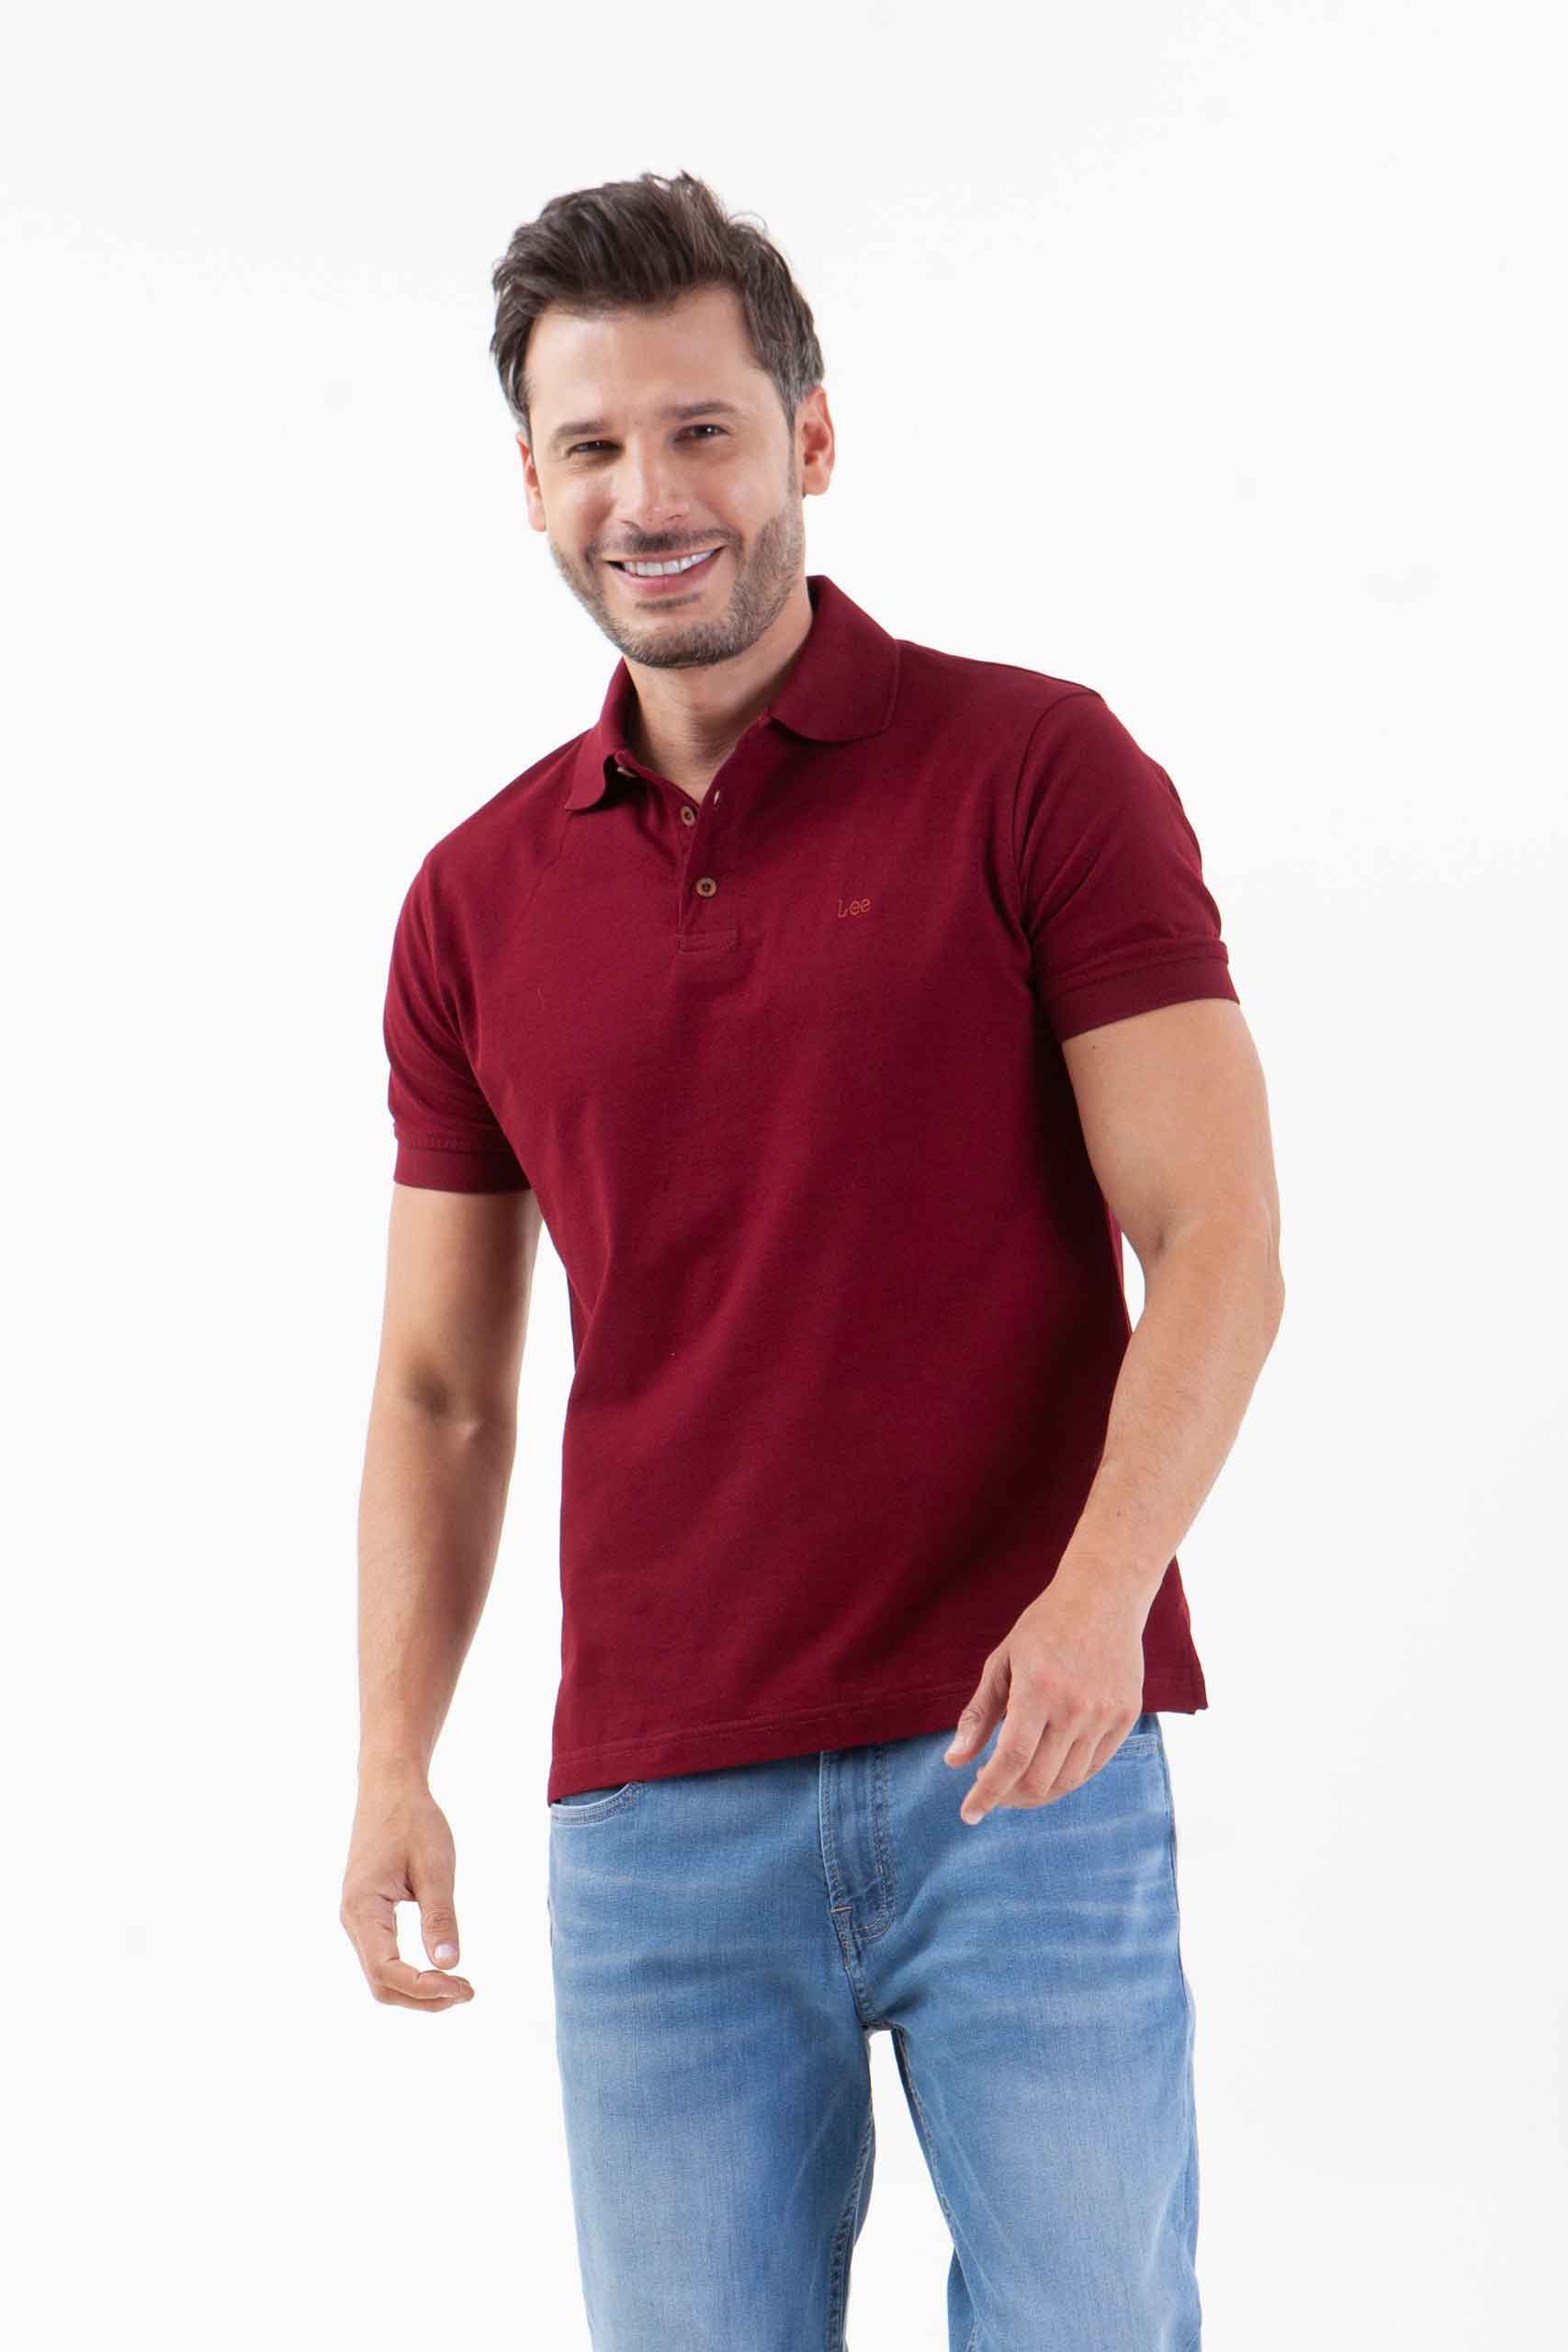 Vista frontal de camiseta de color vino de marca lee